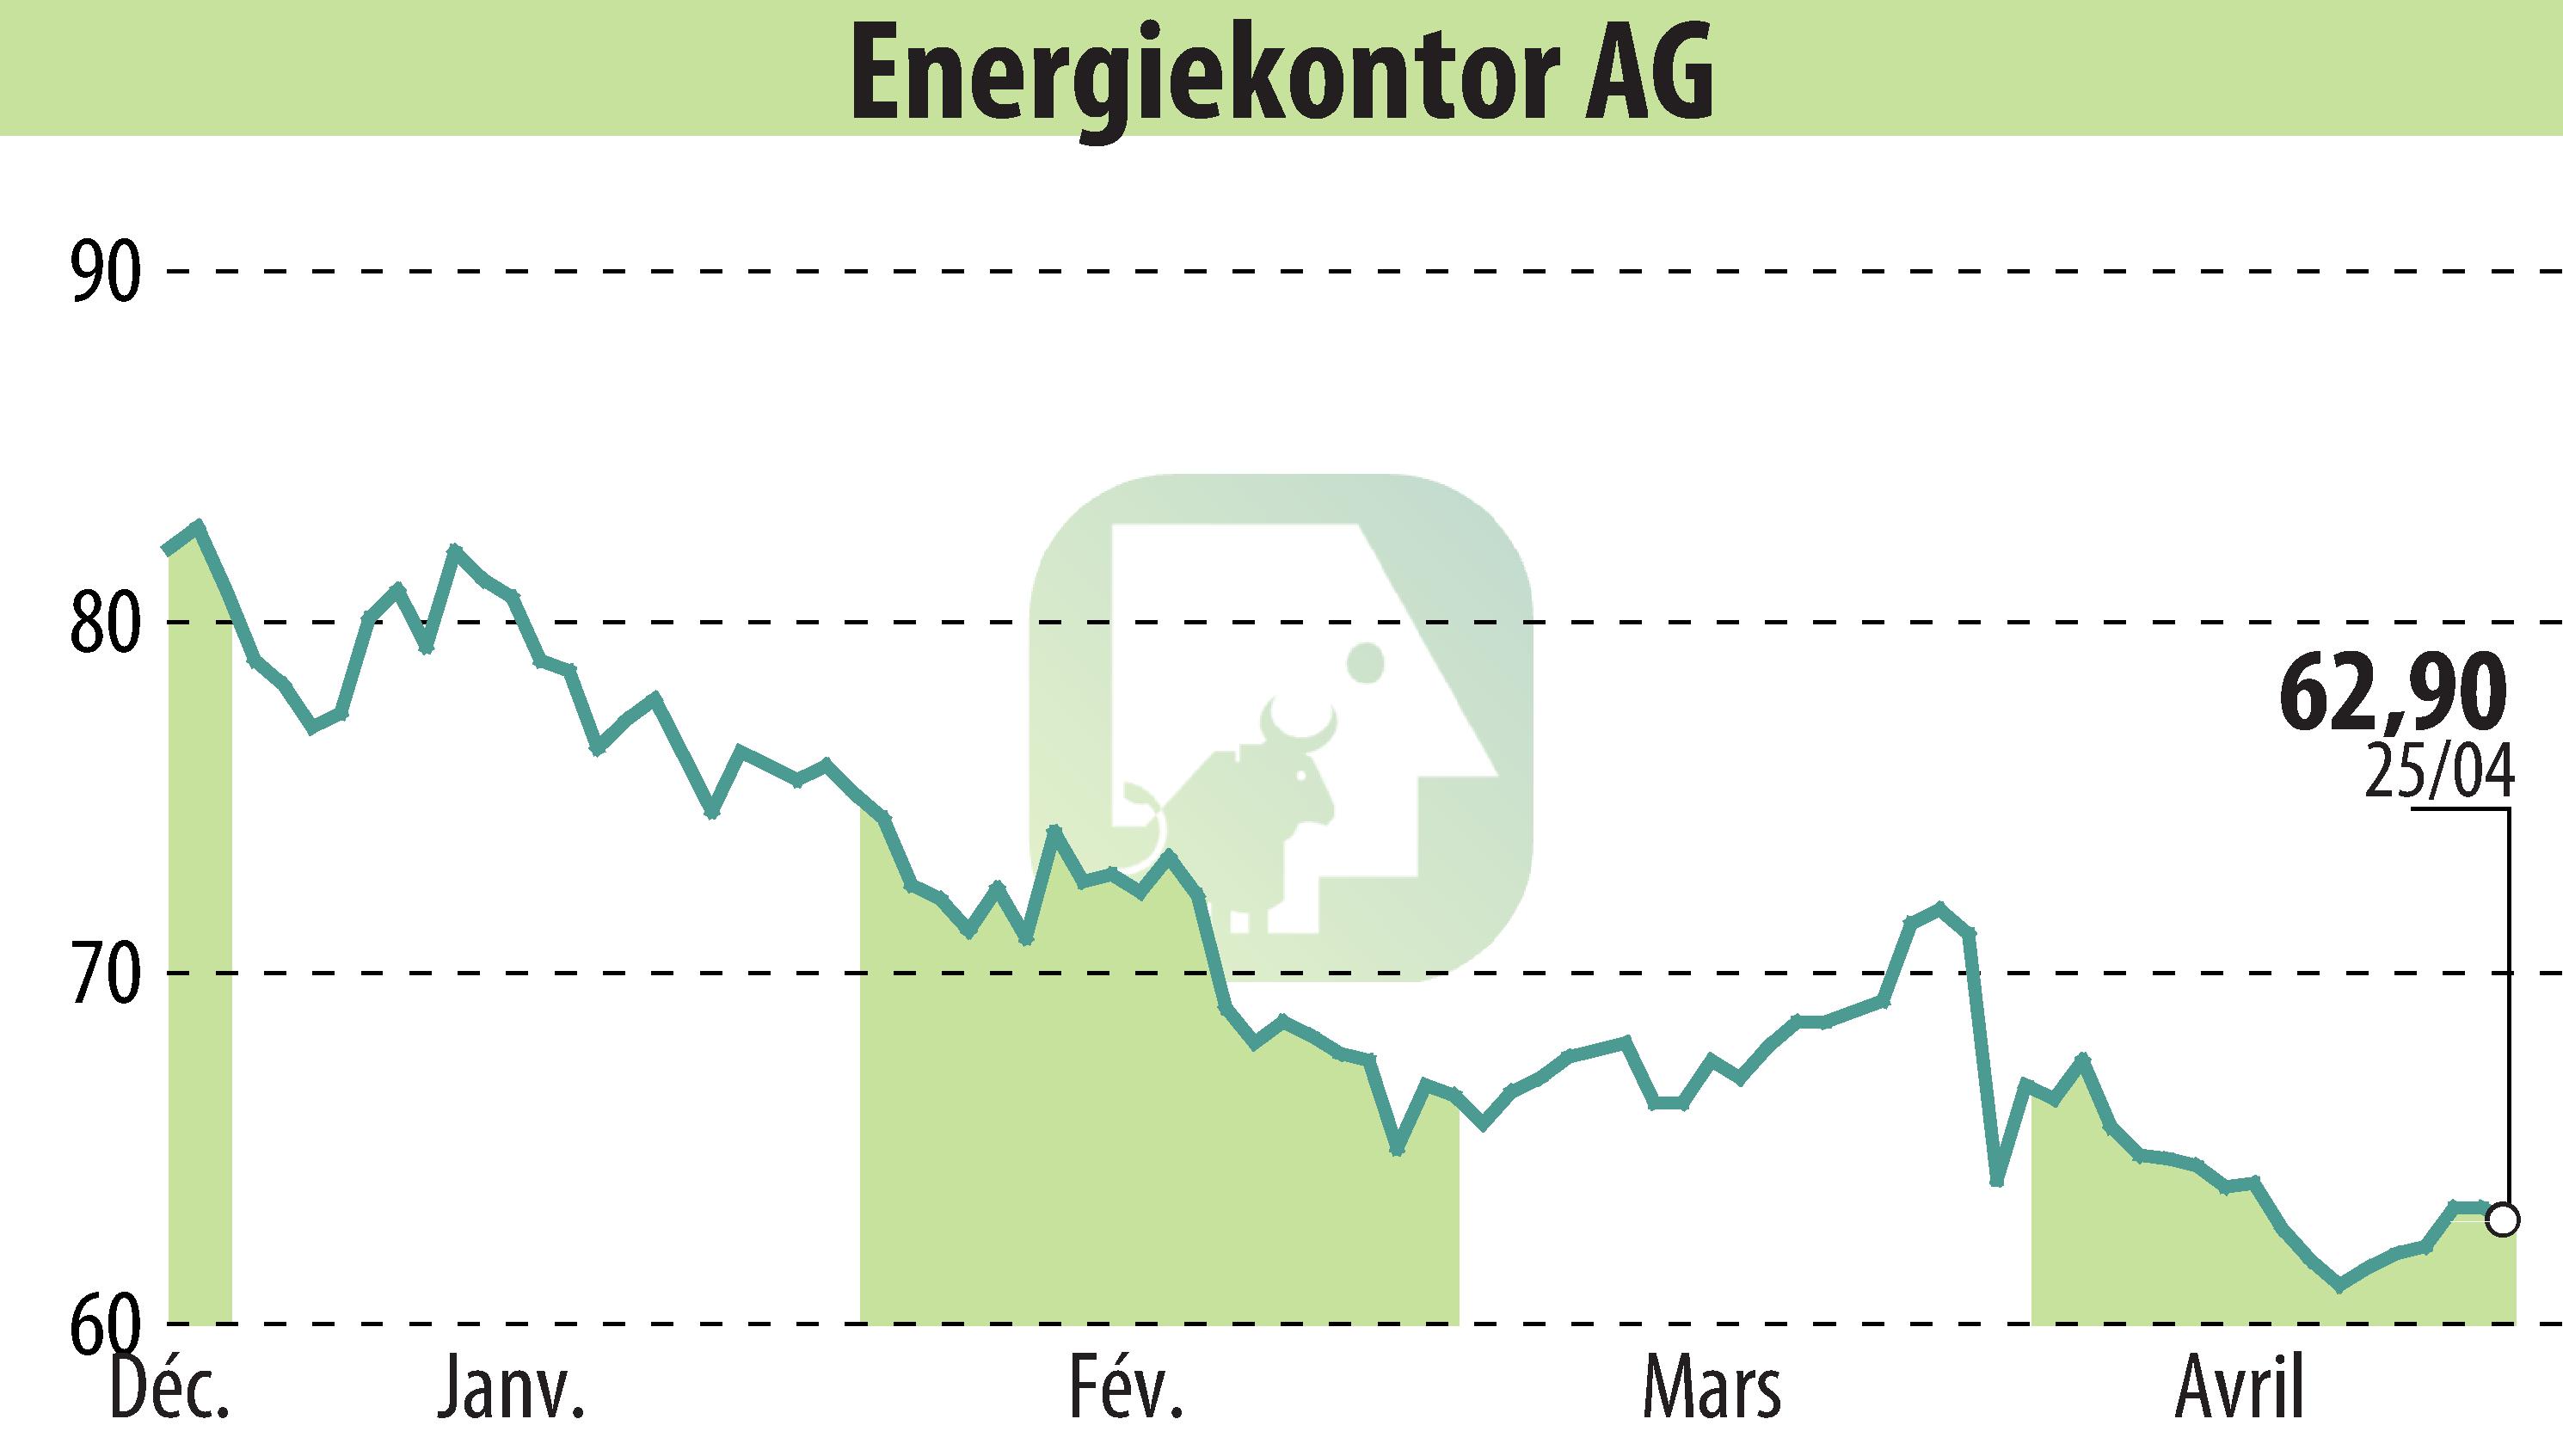 Graphique de l'évolution du cours de l'action Energiekontor AG (EBR:EKT).